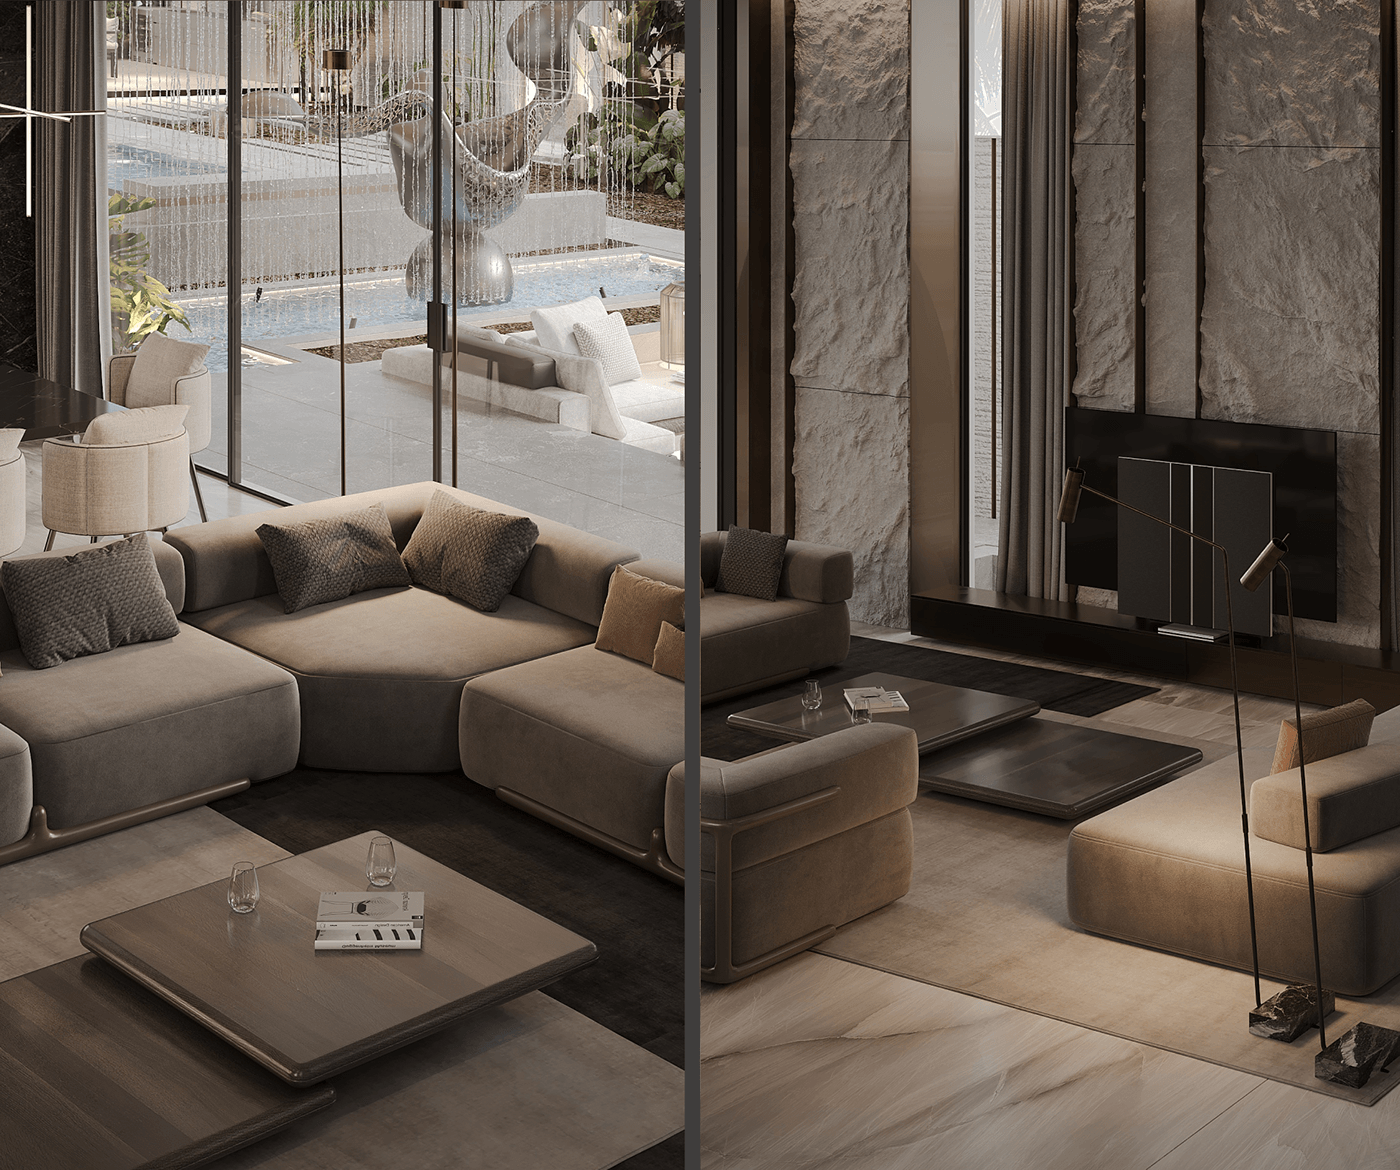 interior design  architecture Render visualization 3ds max modern living room kitchen